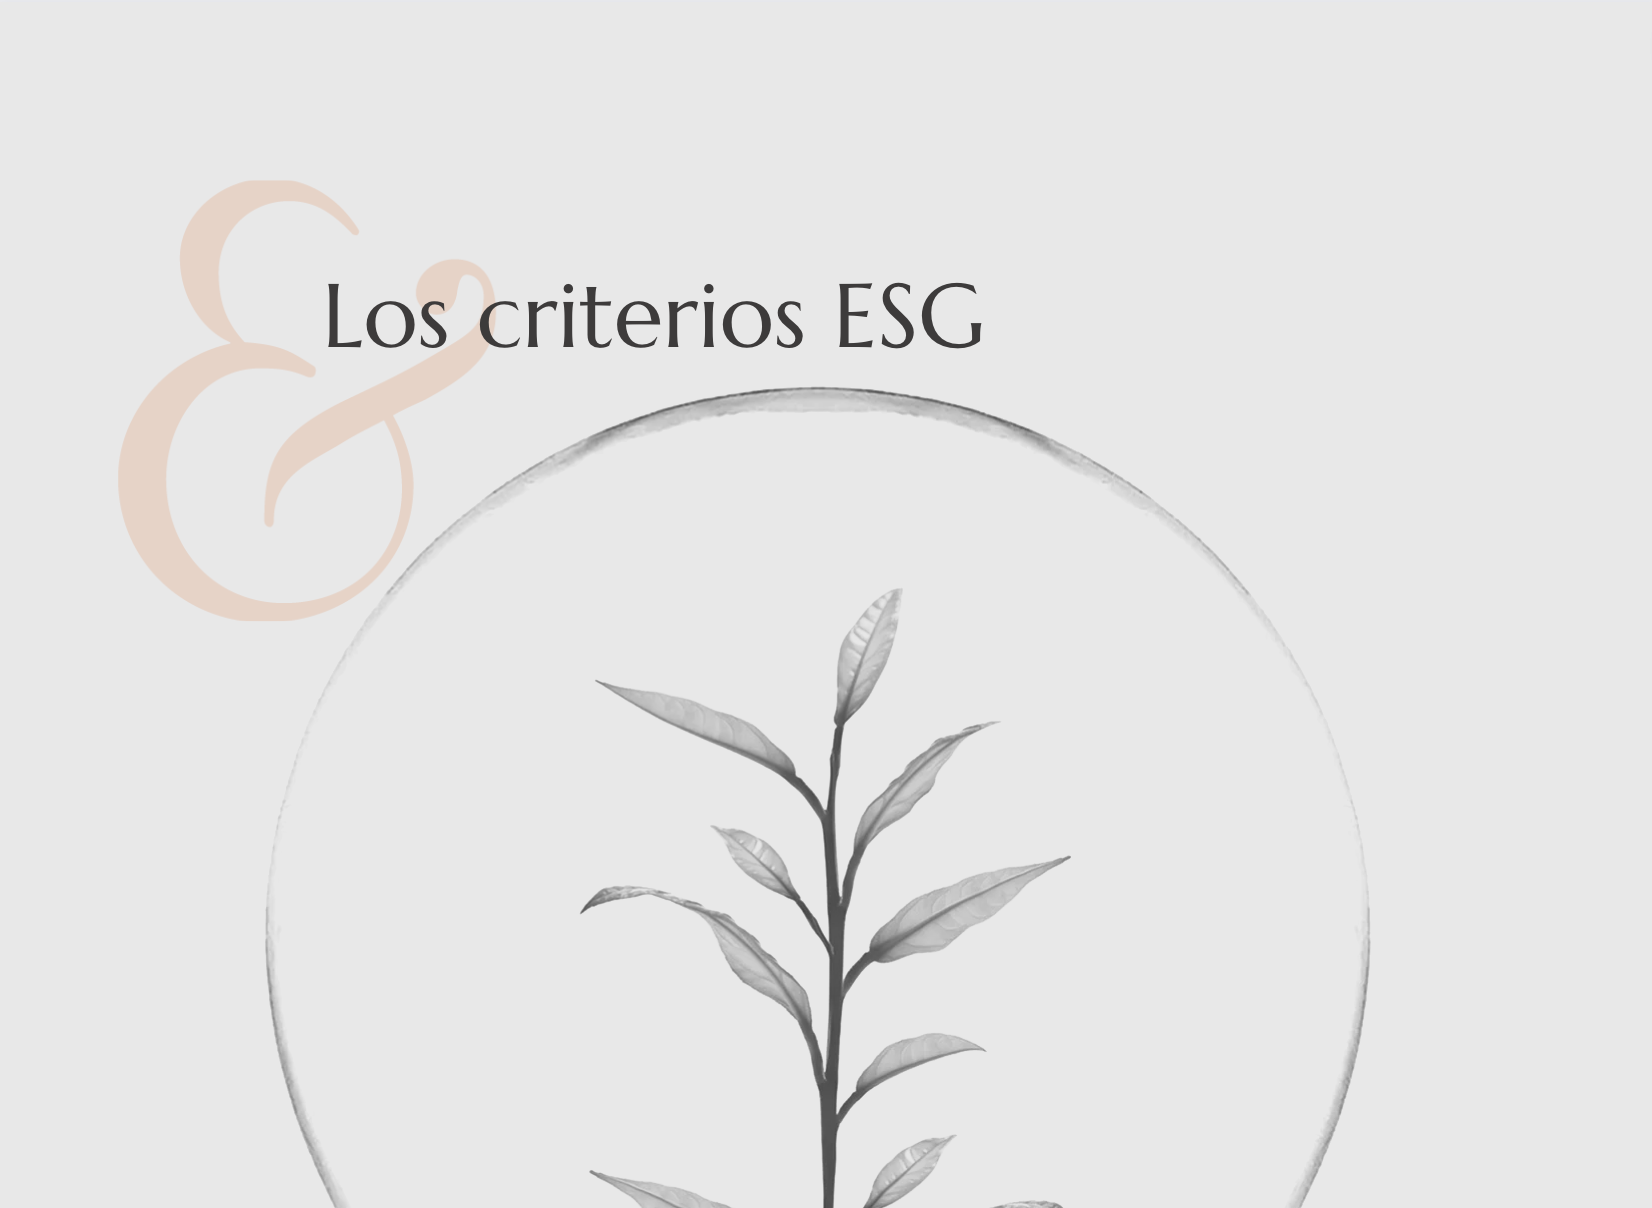 Los criterios ESG: Environmental, Social, Governance